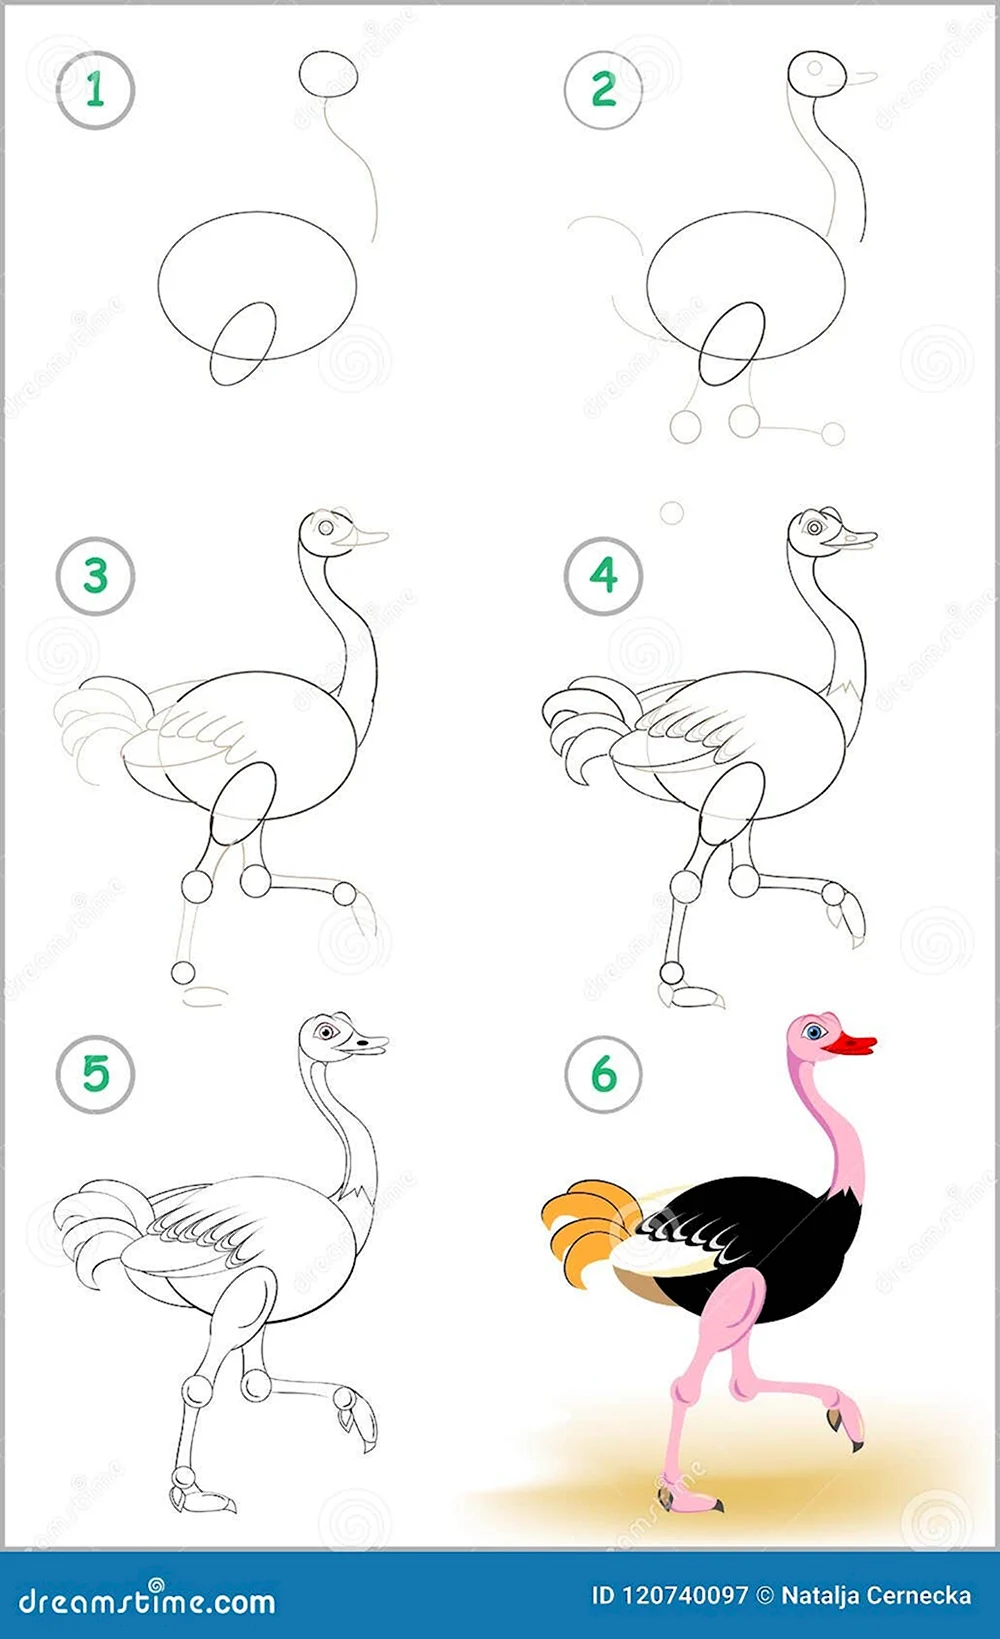 Поэтапное рисование страуса